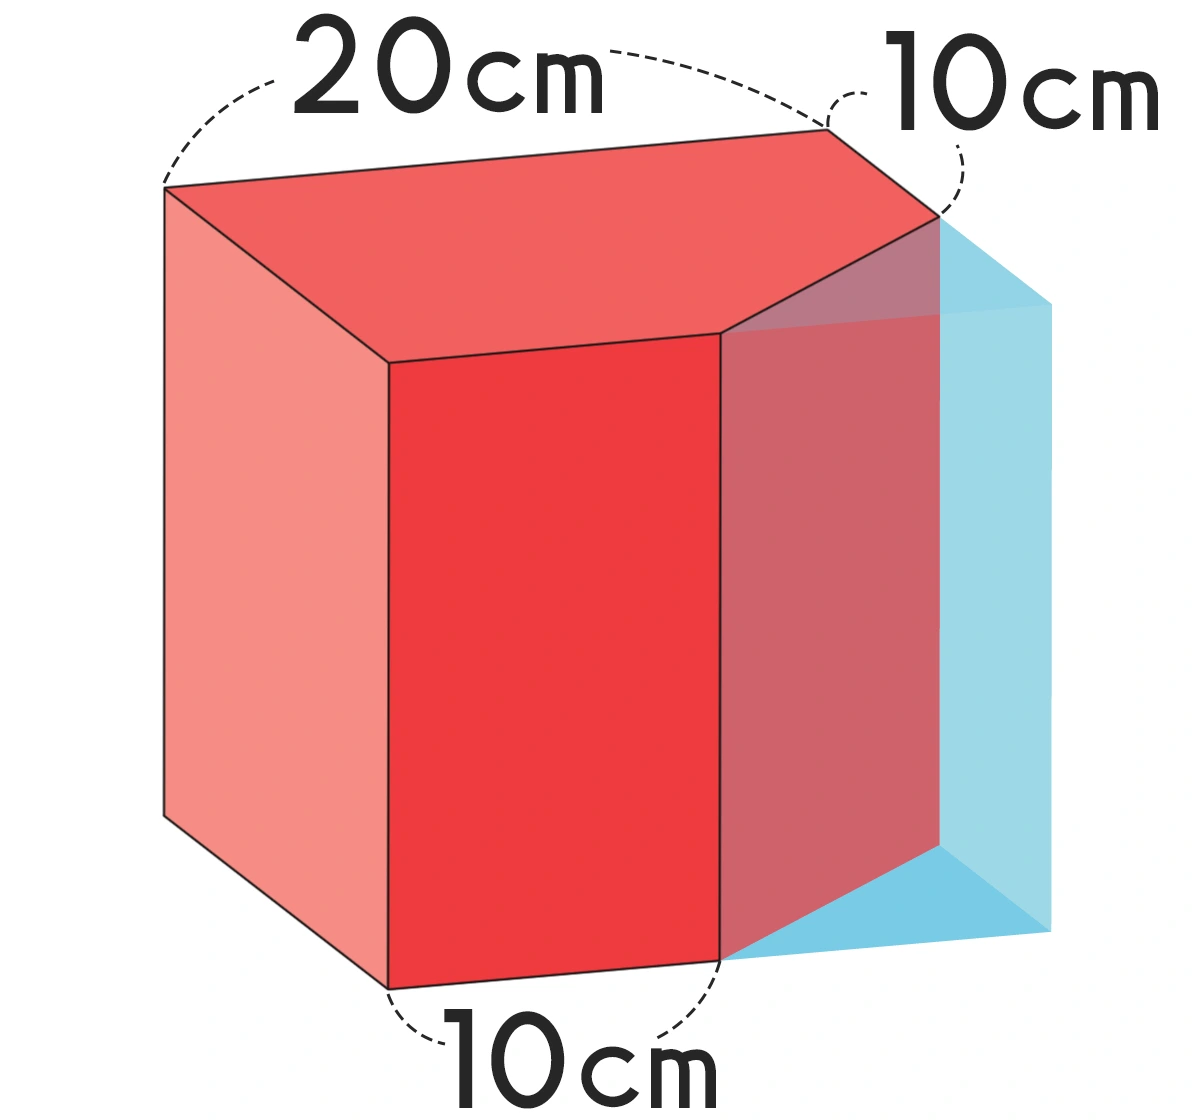 1辺20cmの立方体から三角柱を切り取った立体